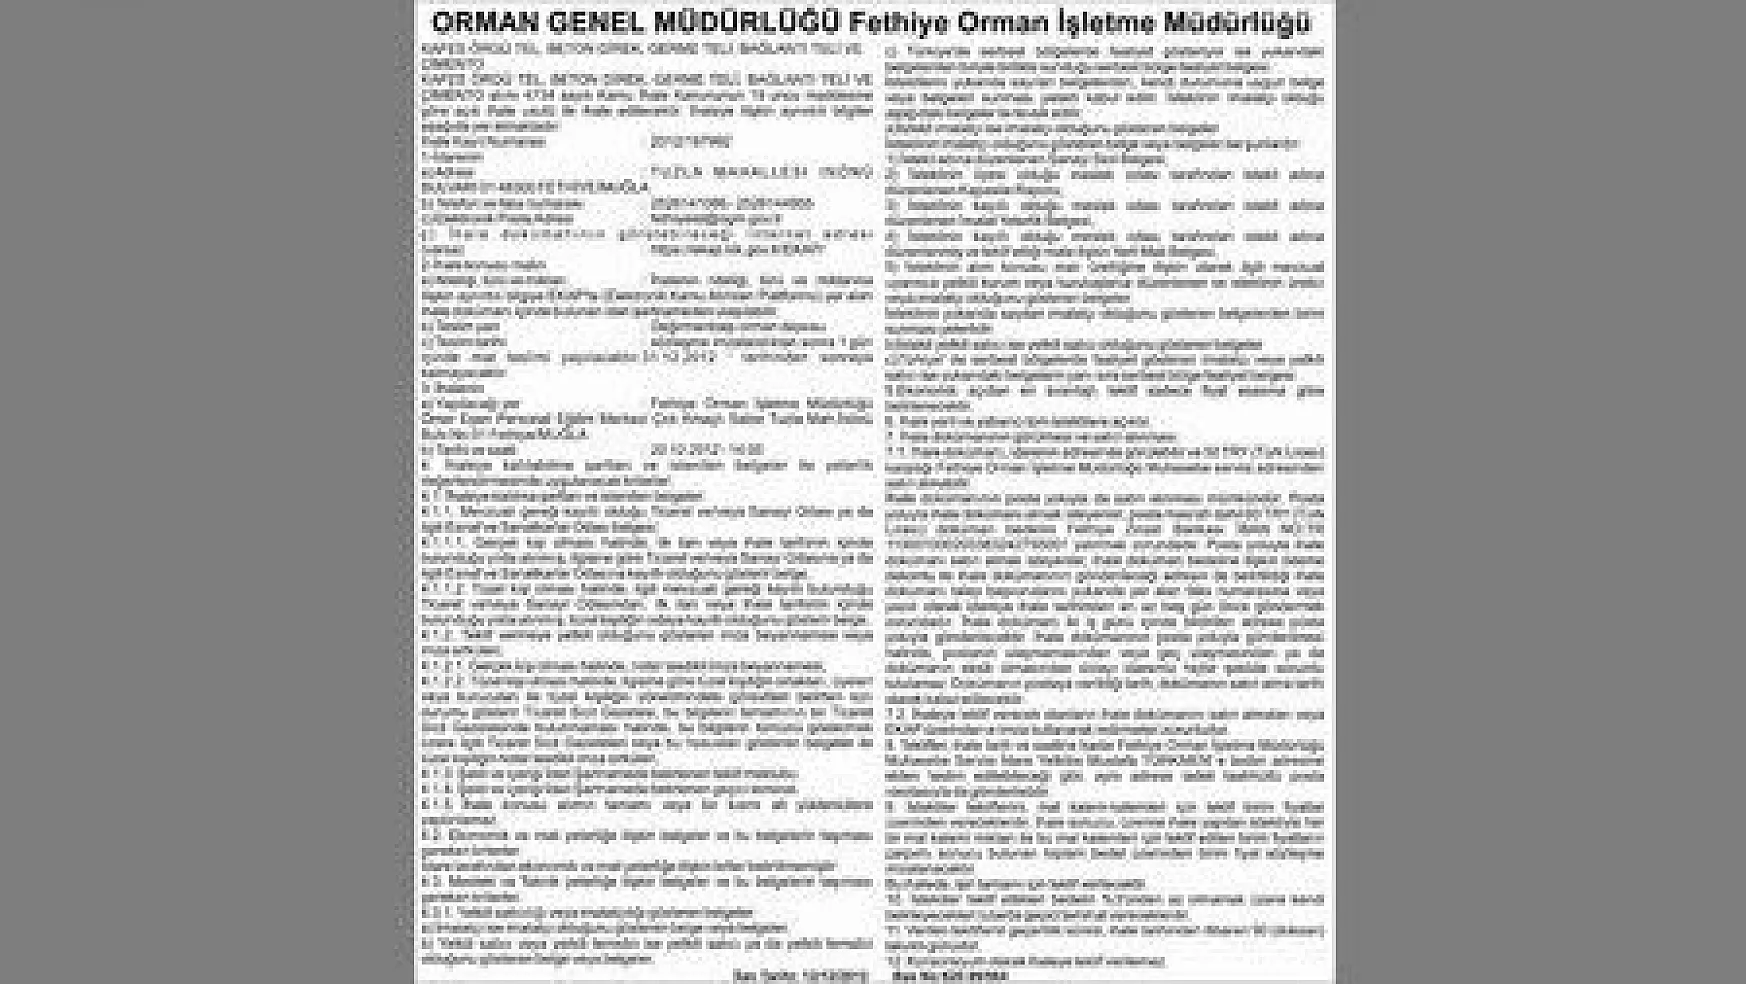 ORMAN GENEL MÜDÜRLÜĞÜ Fethiye Orman İşletme Müdürlüğü-